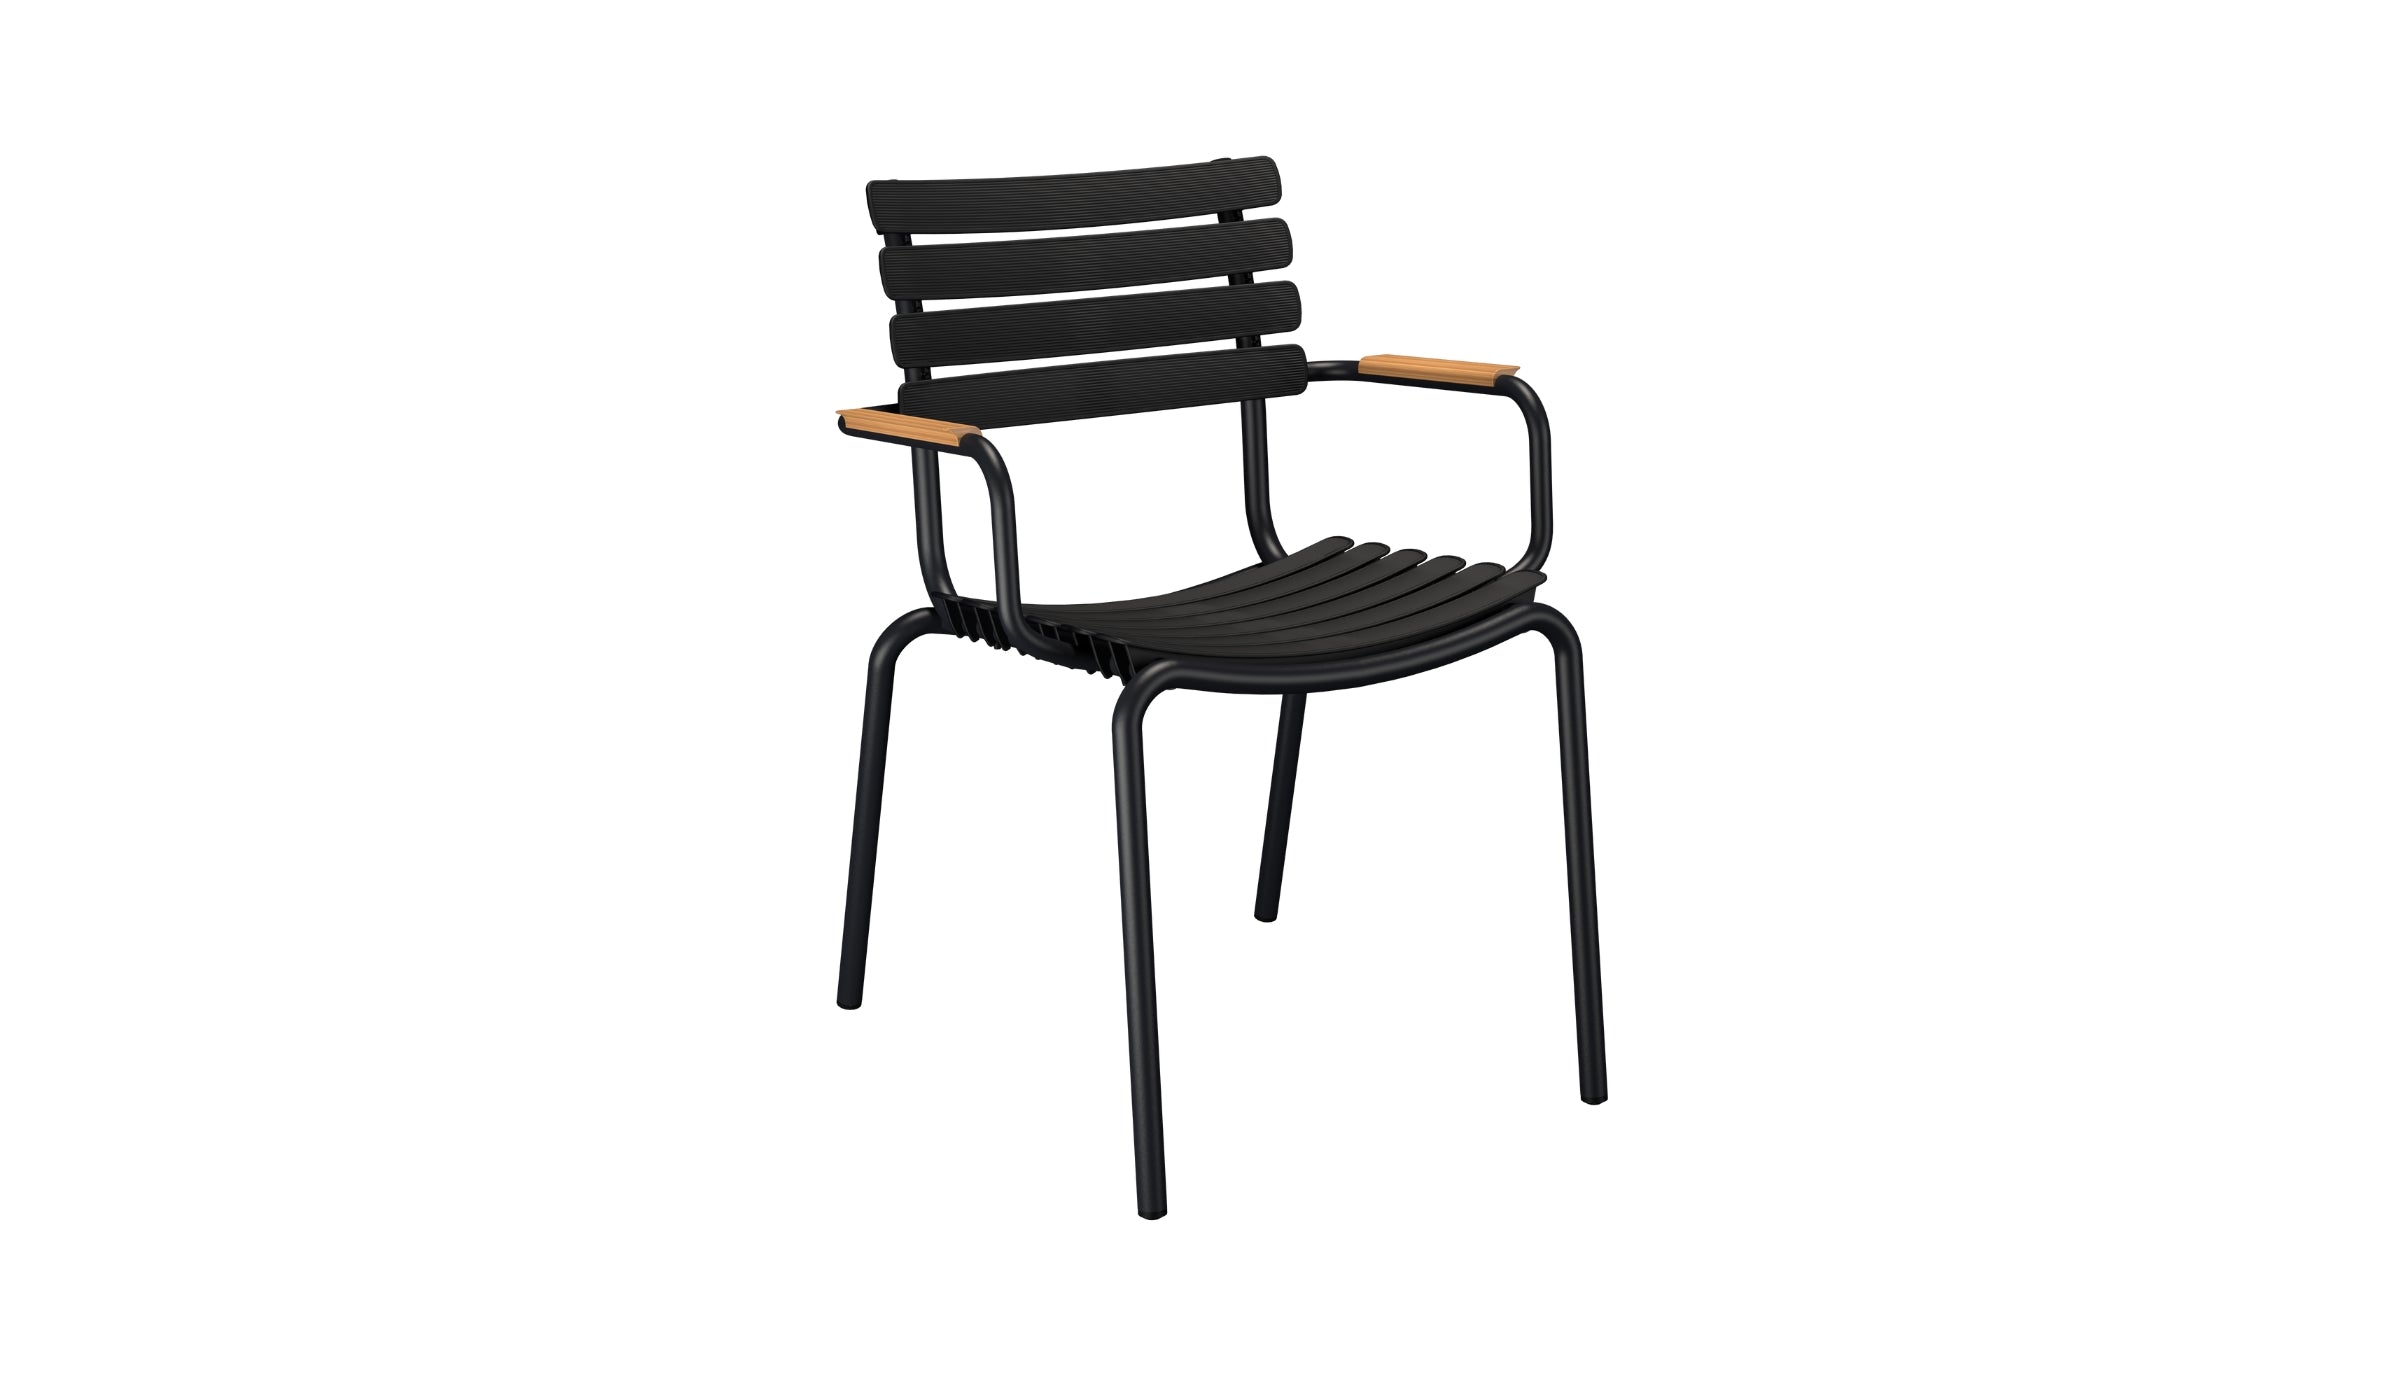 Reclips - Chaise d'extérieur en aluminium et plastique recyclé avec accoudoirs en bambou, noir